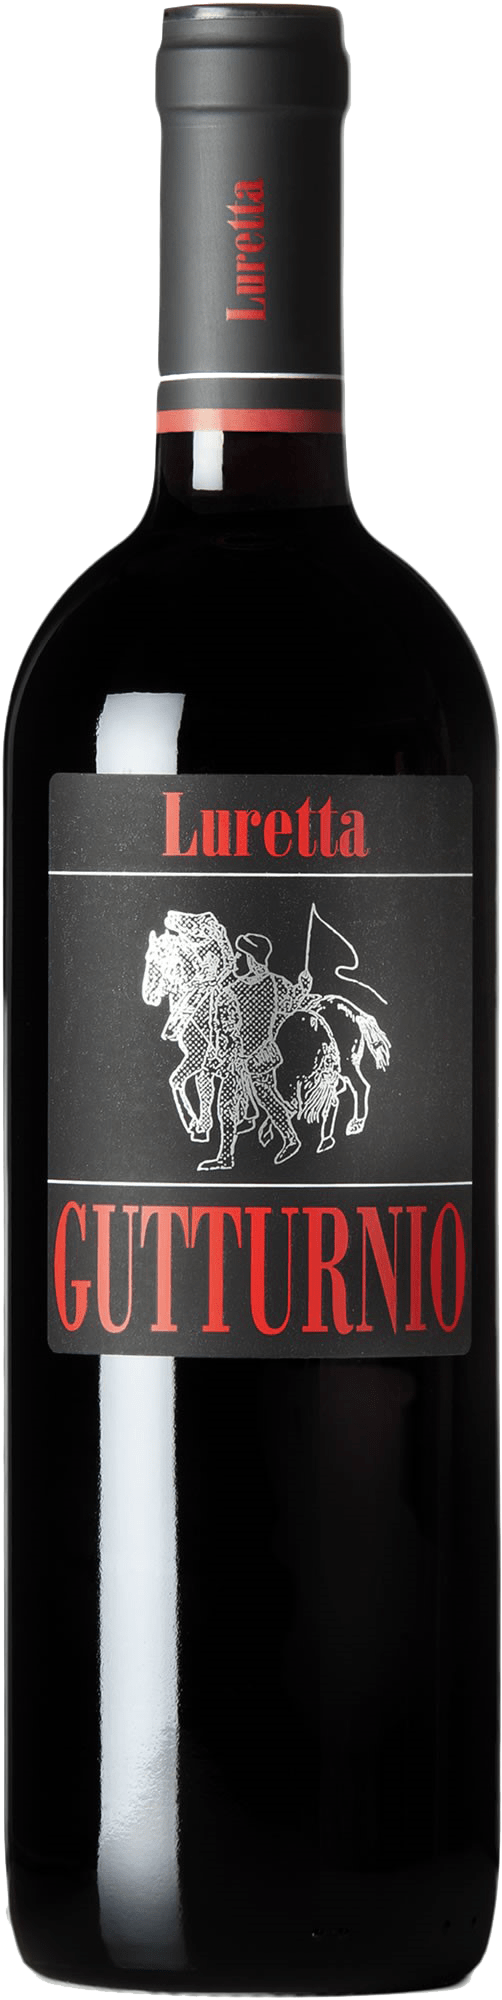 Luretta Guttornio - Casa del Vino Amsterdam